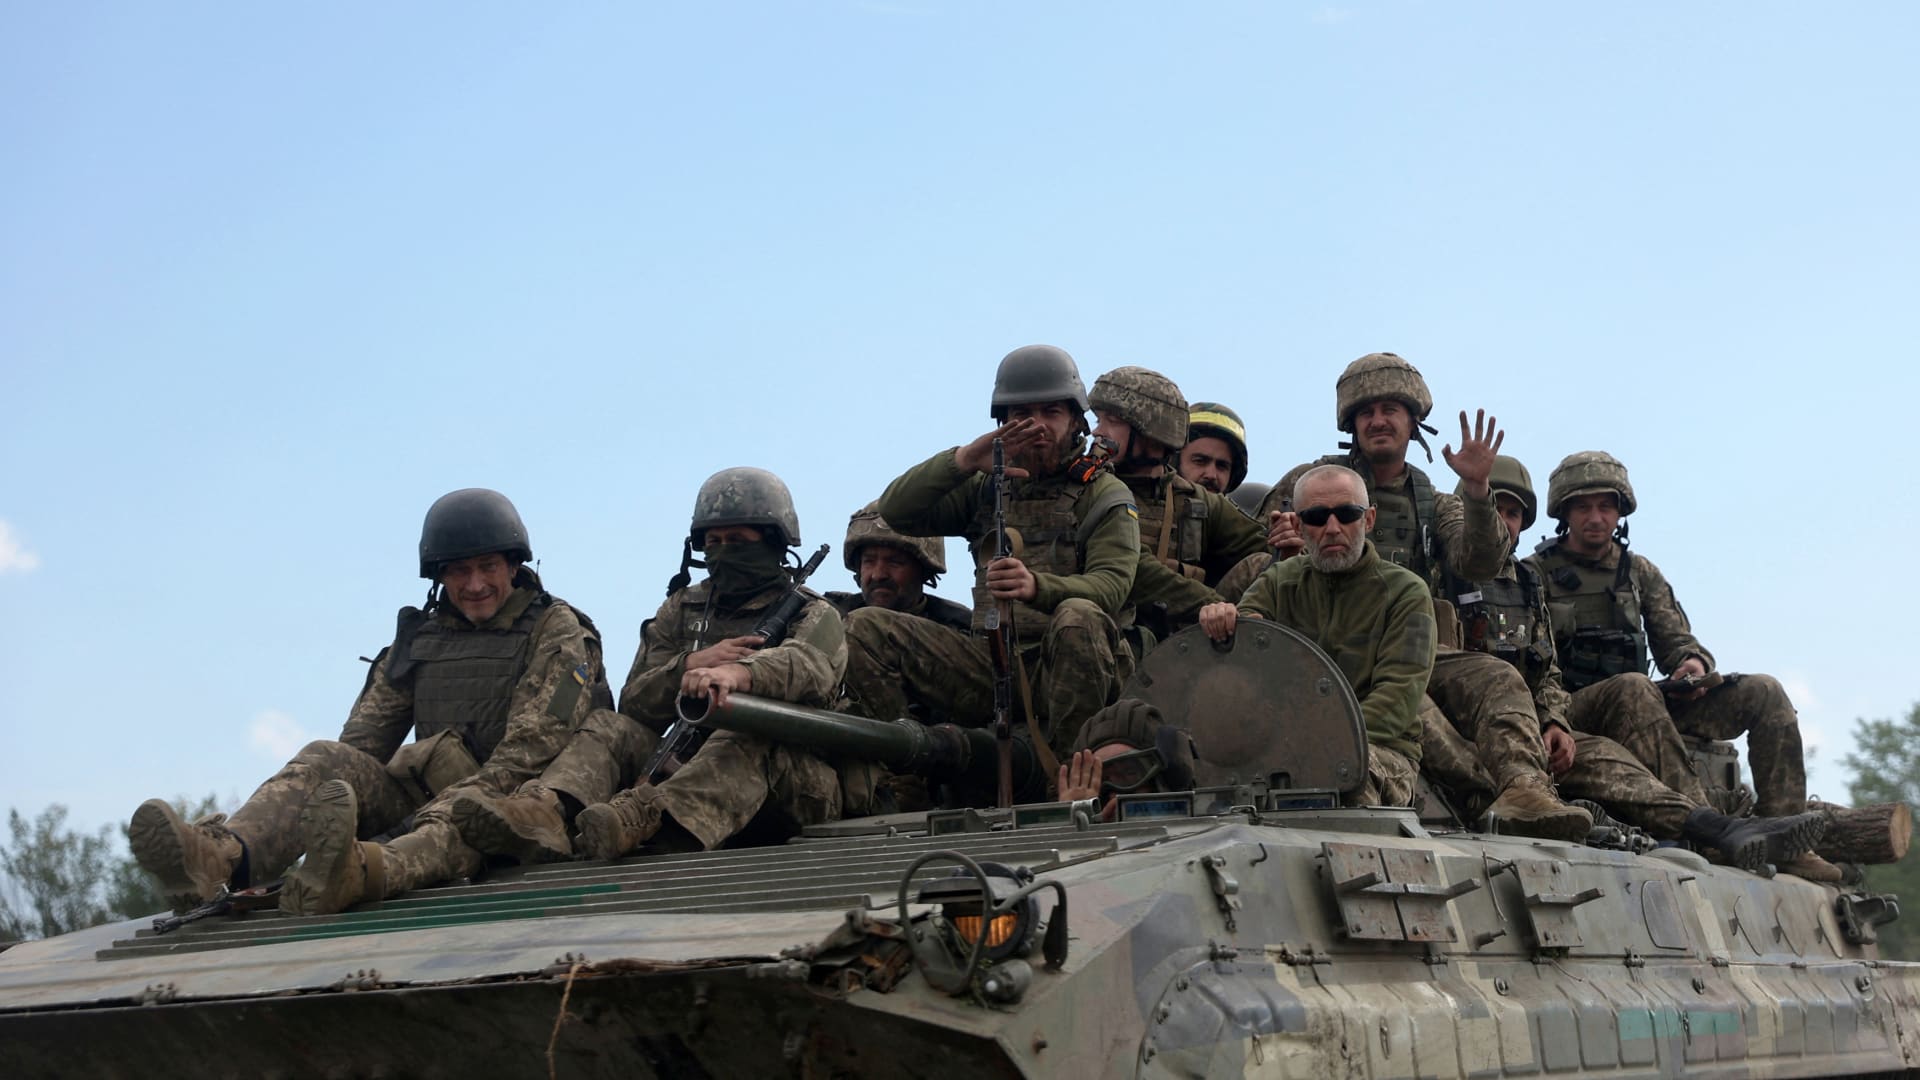 وسط استمرار الغزو الروسي.. أوكرانيا تكثف تدريبات المتطوعين للقتال